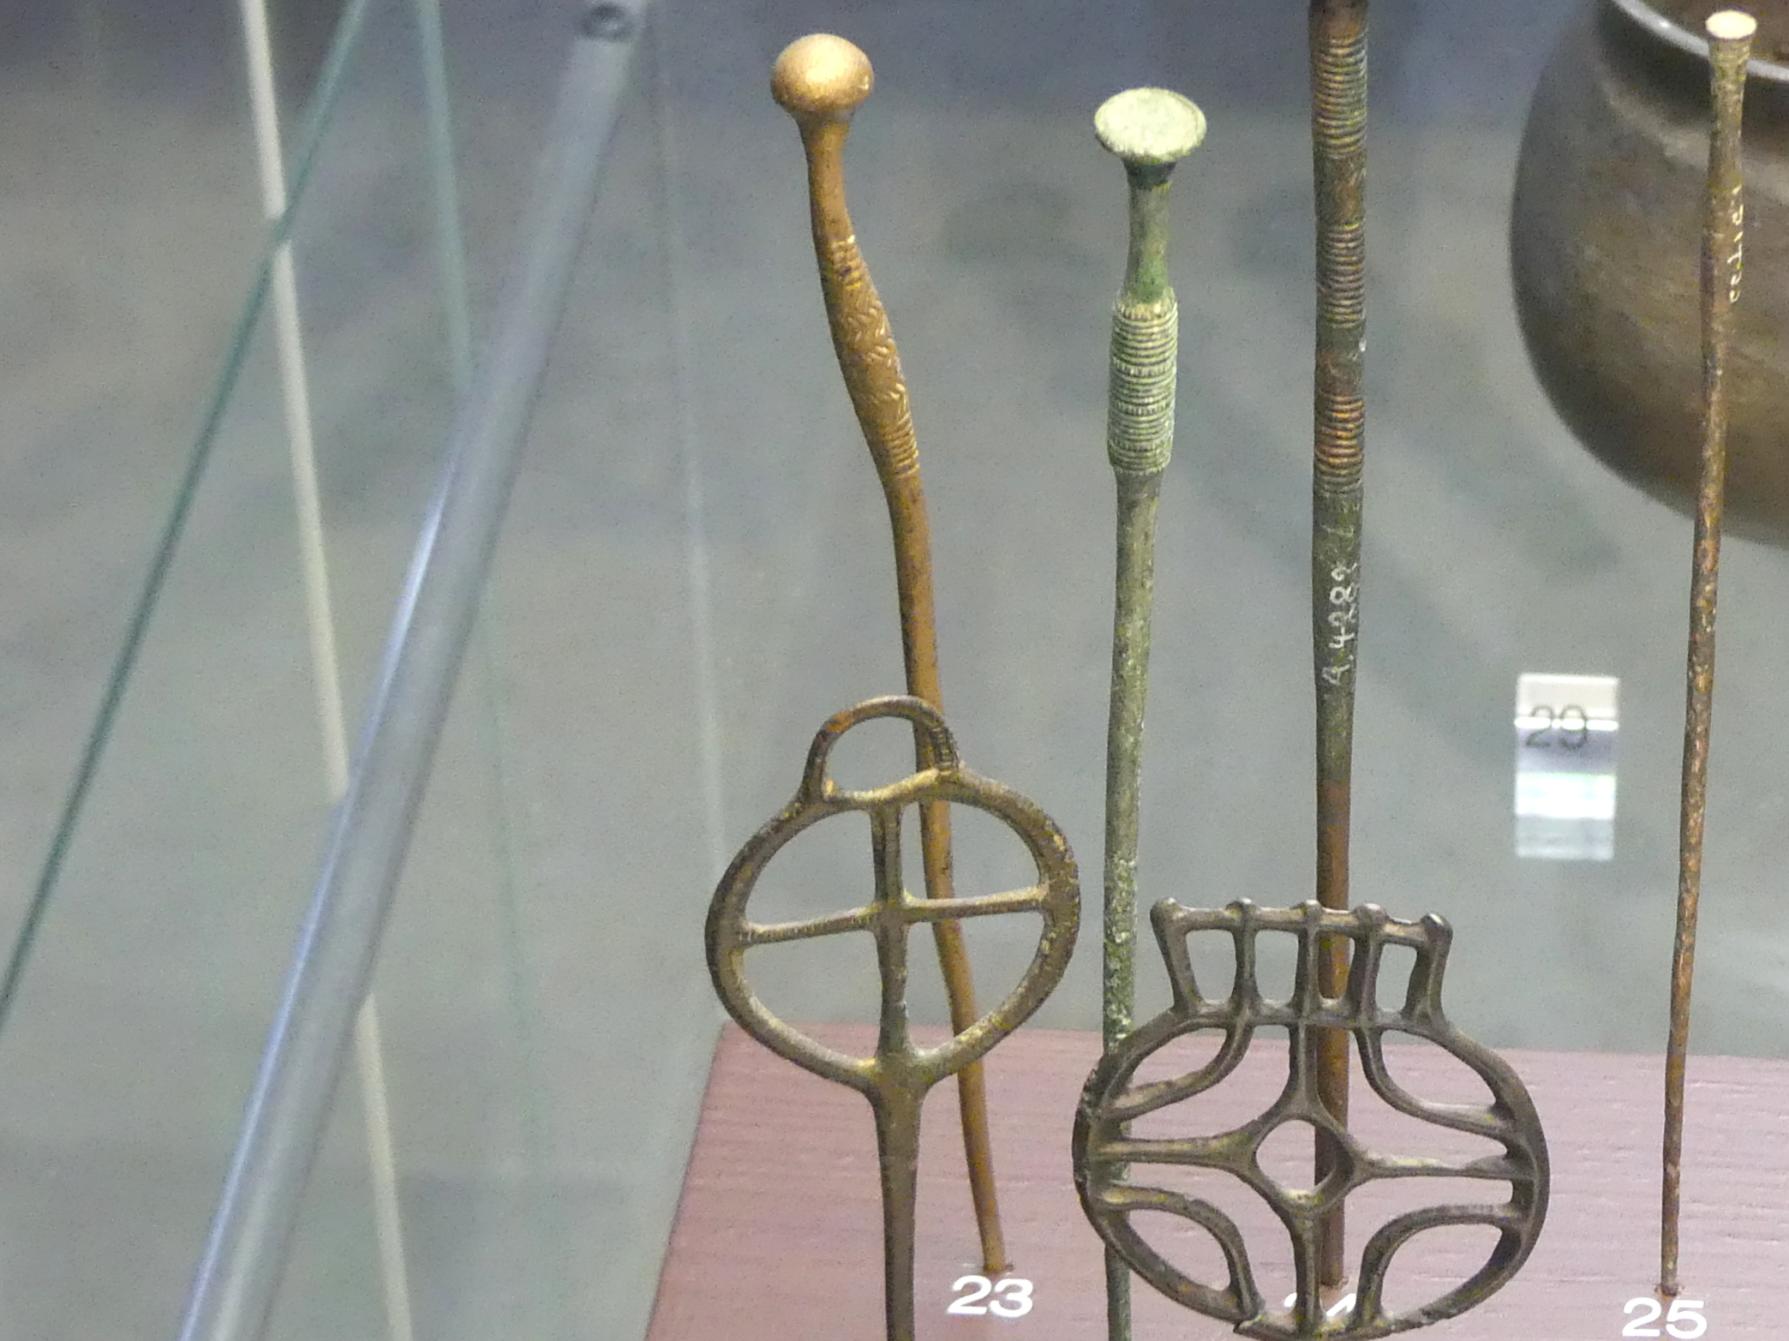 Kugelkopfnadel, Mittlere Bronzezeit, 3000 - 1300 v. Chr., Späte (Jüngere) Bronzezeit, 1500 - 700 v. Chr., Bild 1/2